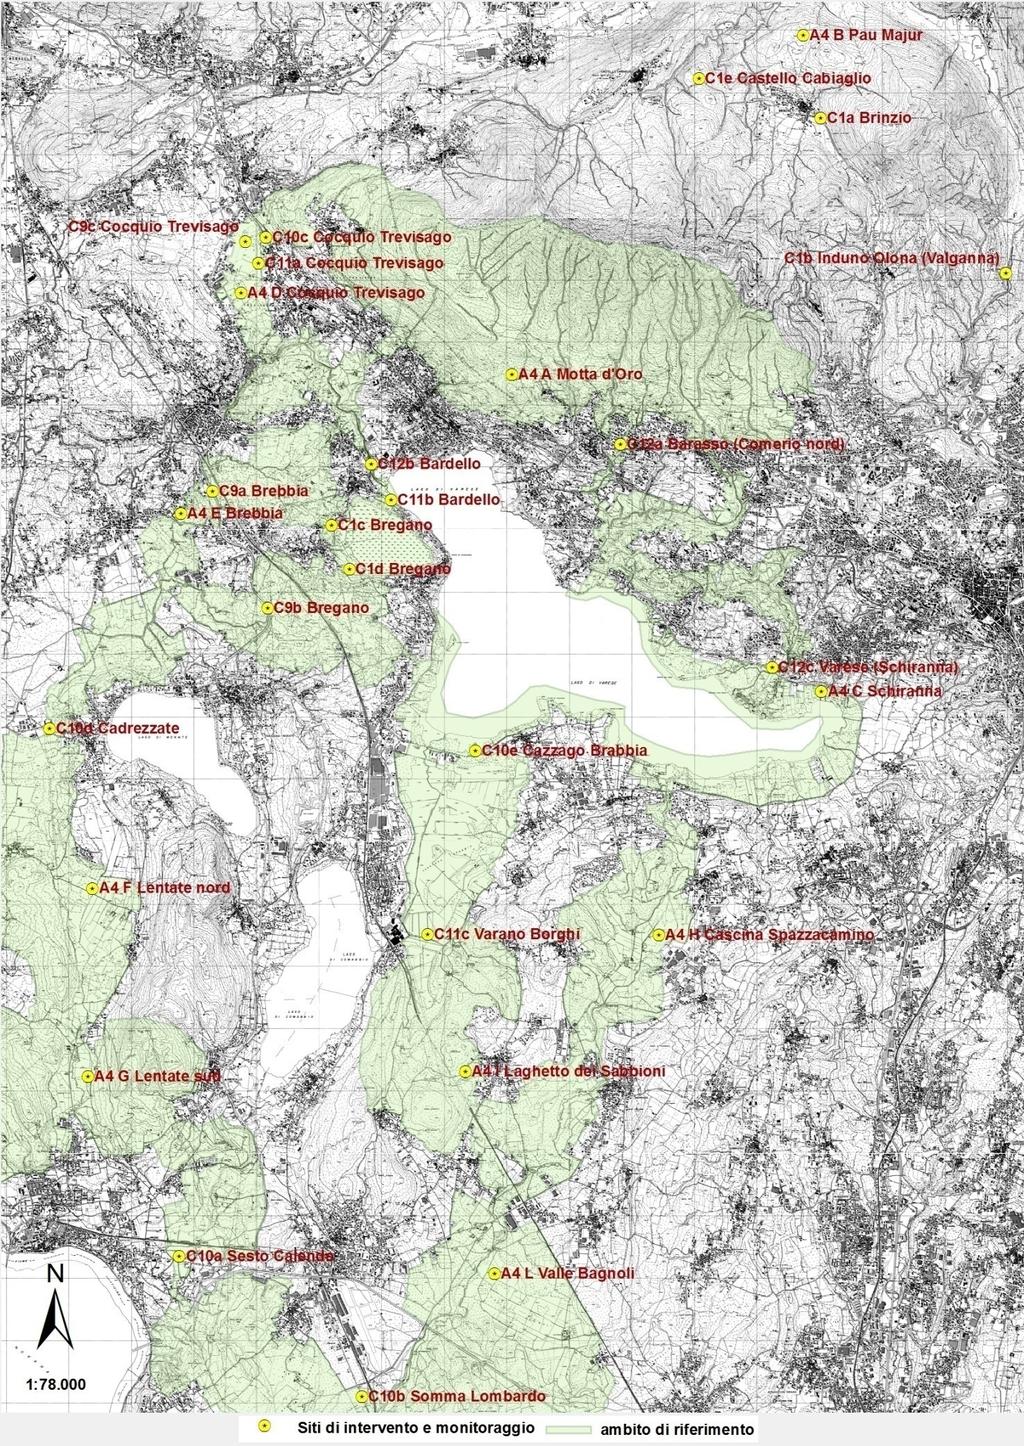 Mappa di inquadramento progettuale con localizzazione geografica dei siti in cui sono previsti gli interventi e in cui è